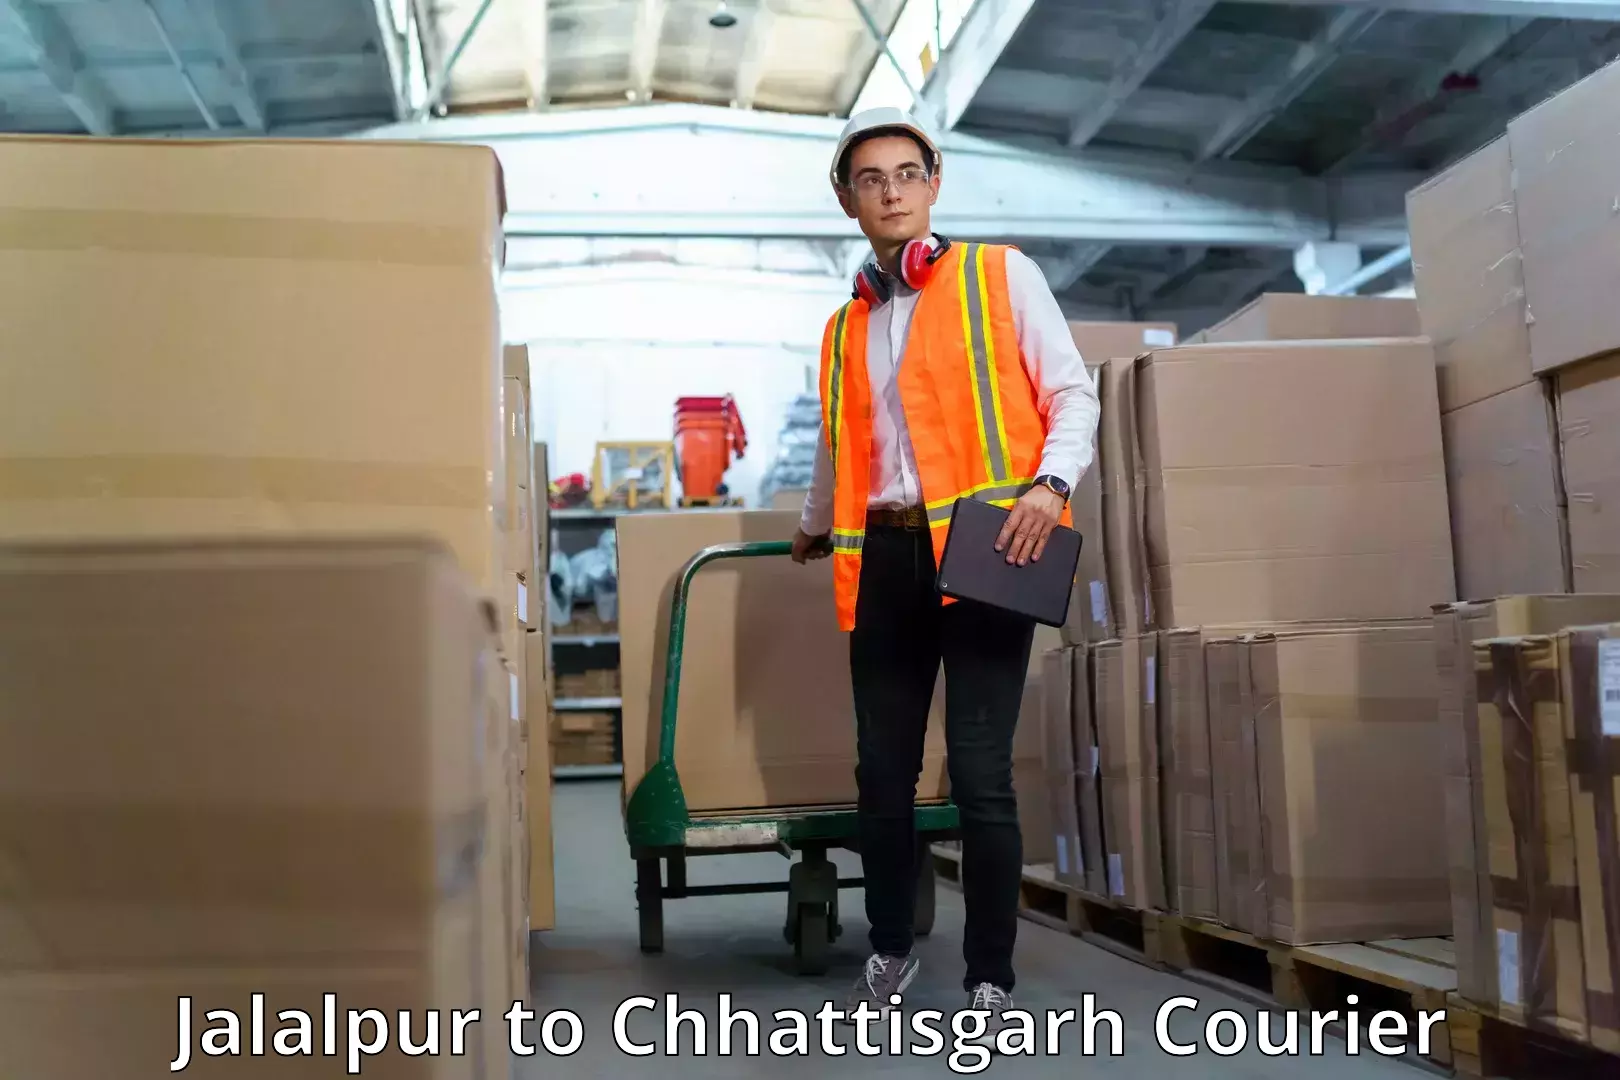 Local delivery service Jalalpur to Chhattisgarh